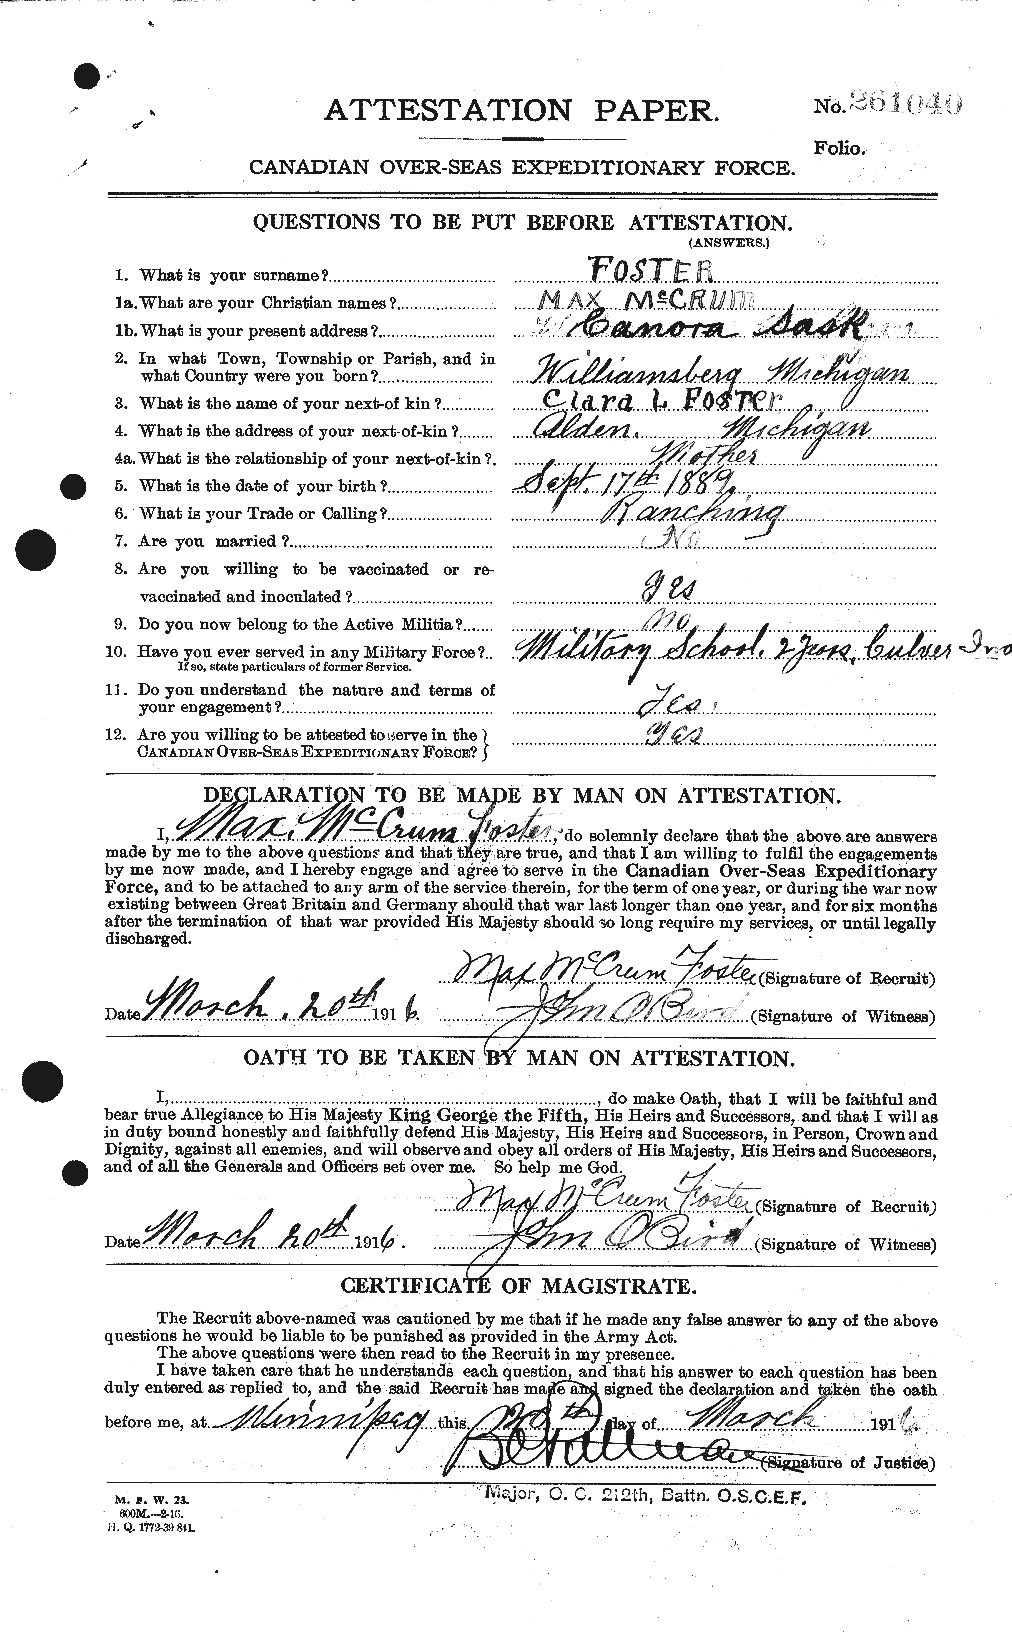 Dossiers du Personnel de la Première Guerre mondiale - CEC 333423a